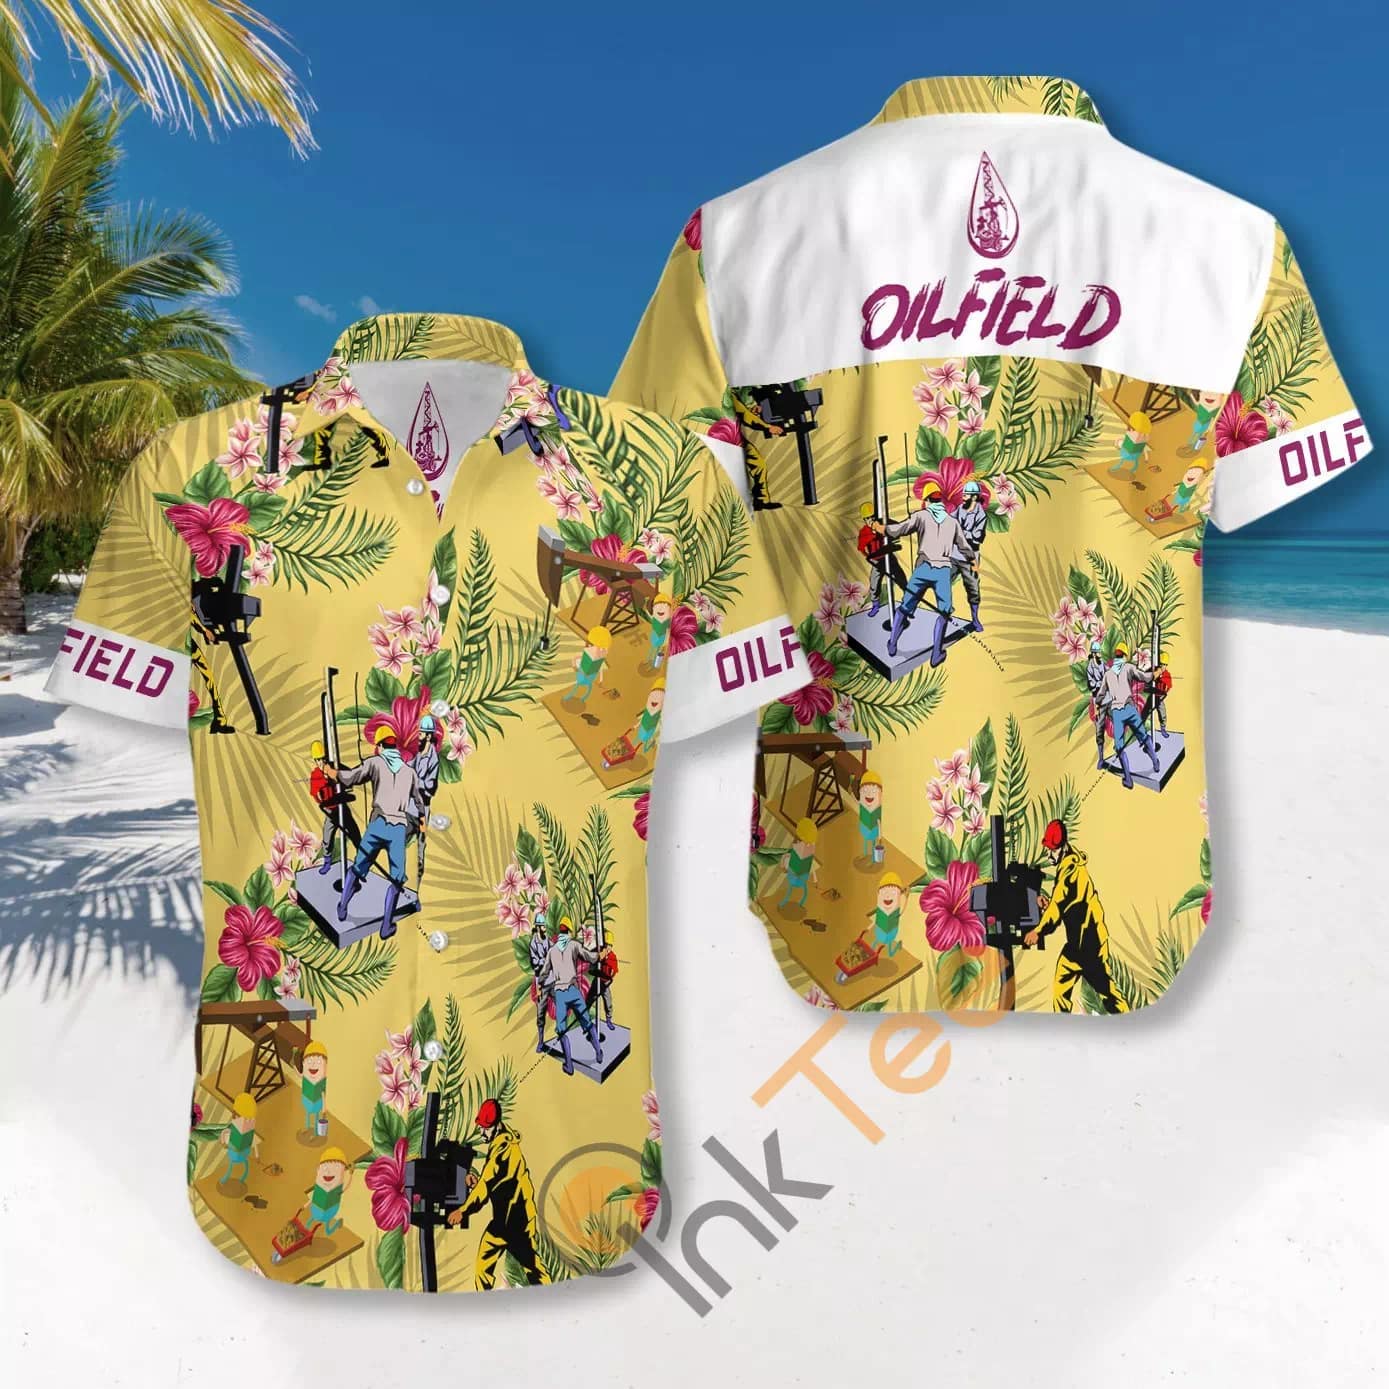 Oilfield N837 Hawaiian shirts